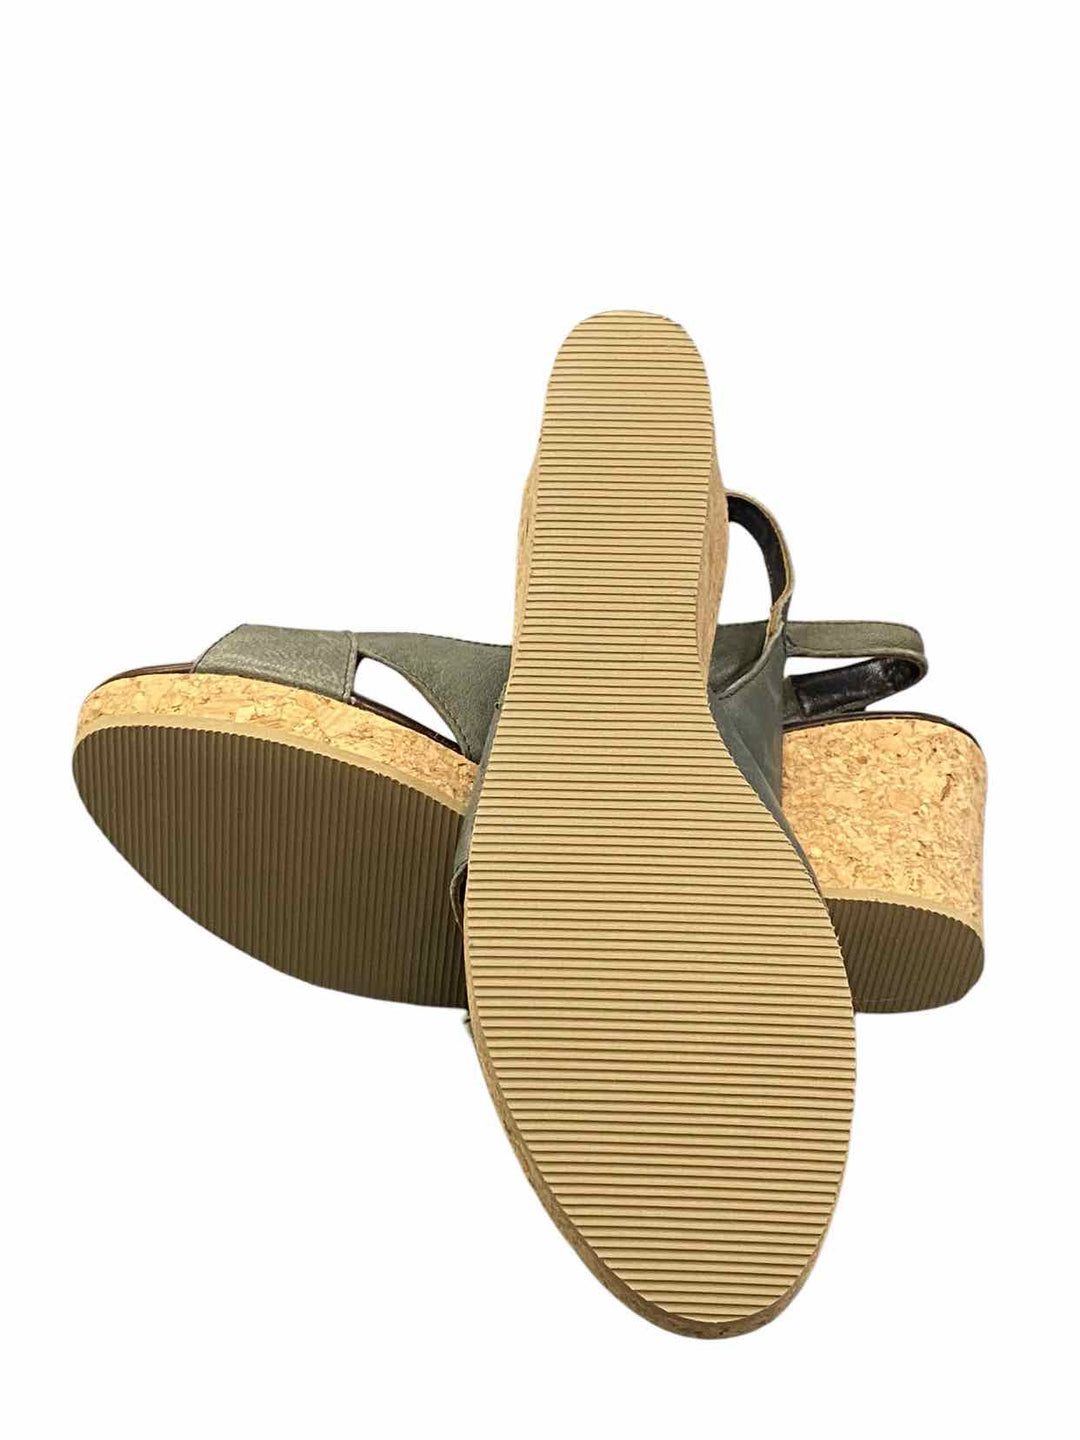 Garnet Hill Shoe Size 8 Green Leather Open Toe Heels